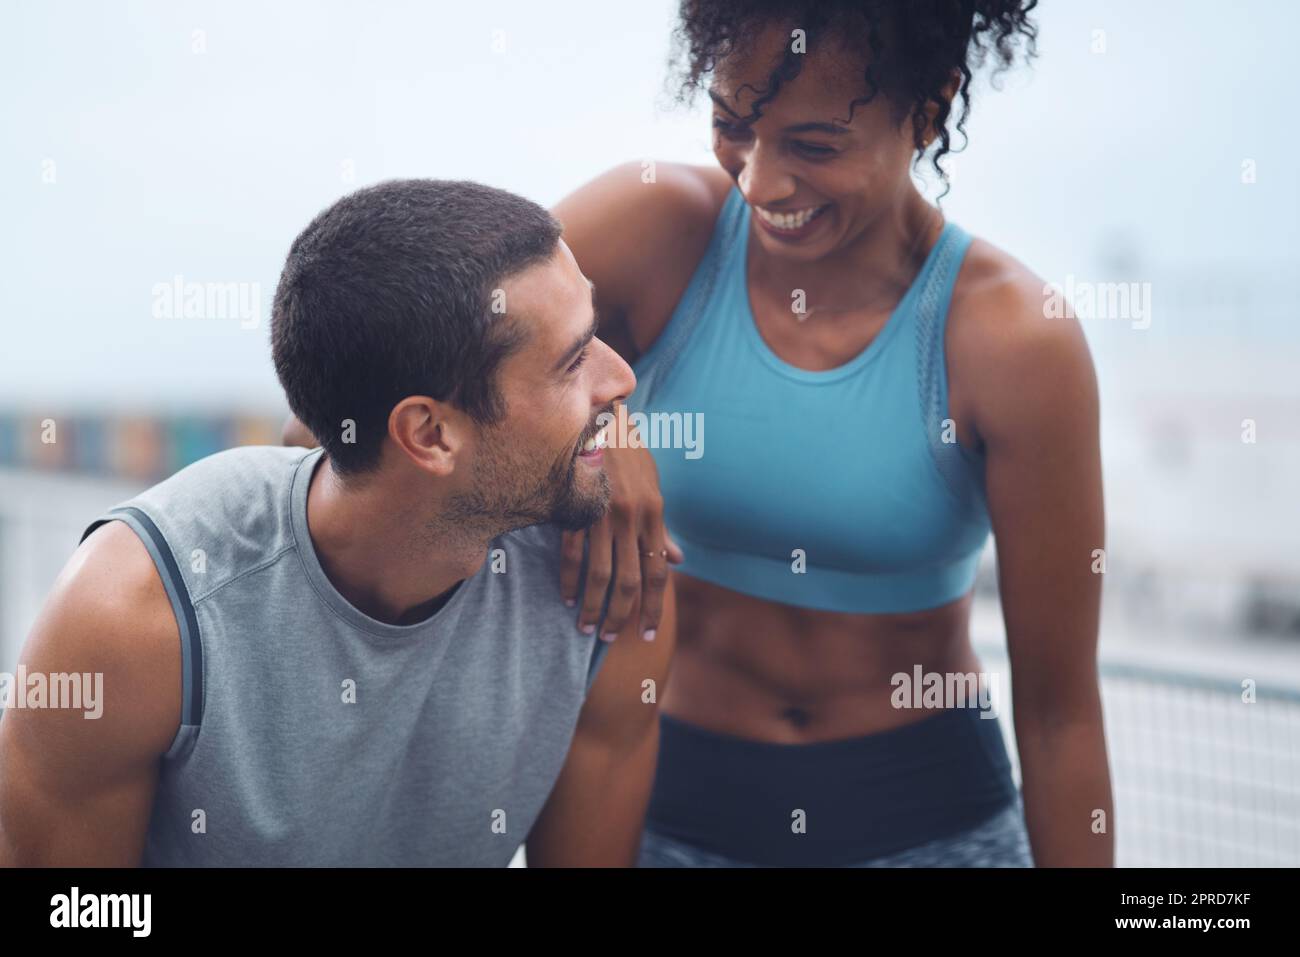 Questo stile di vita sano ci soddisfa davvero bene. Una giovane coppia sportiva che fa una pausa mentre si esercita all'aperto. Foto Stock